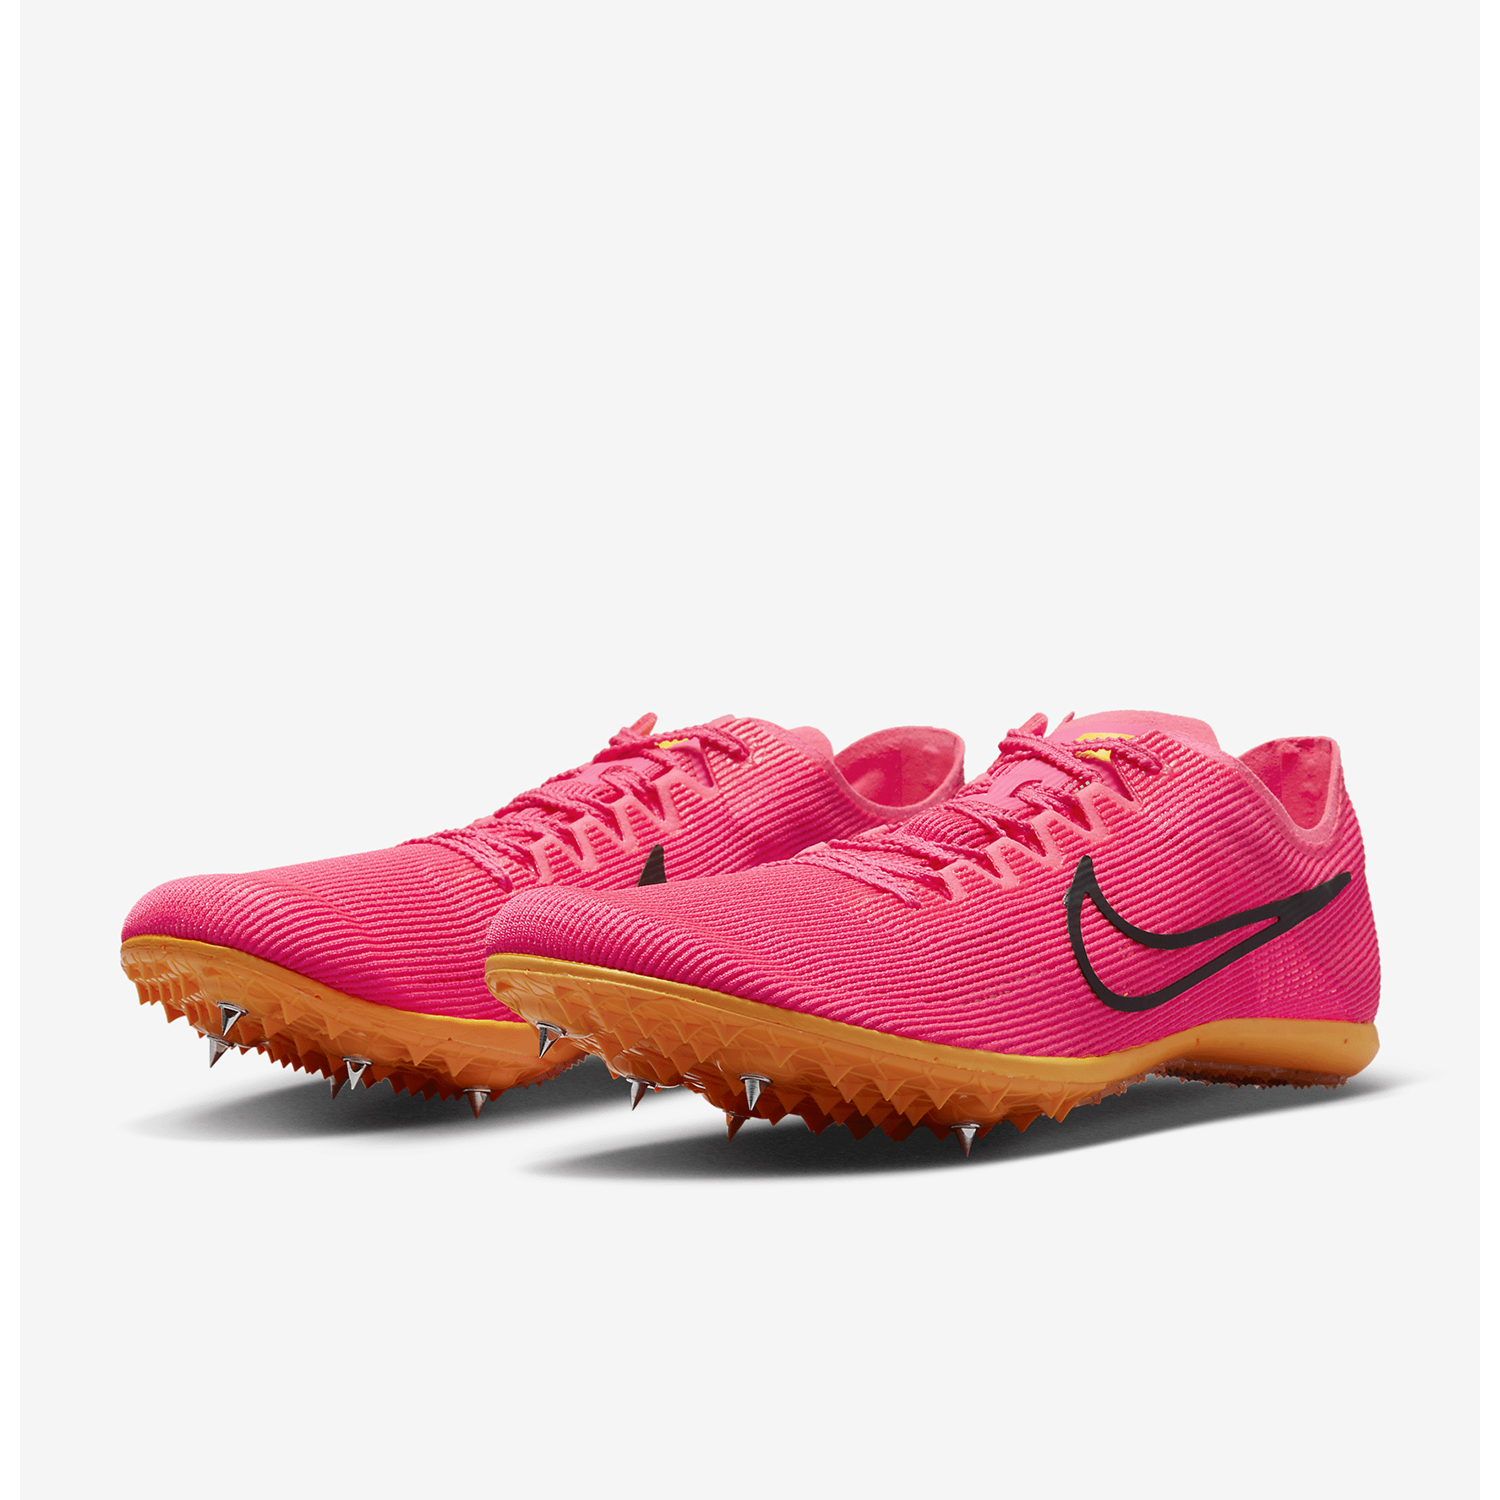 Nike Zoom Mamba 6 - Hyper Pink/Black/Laser Orange